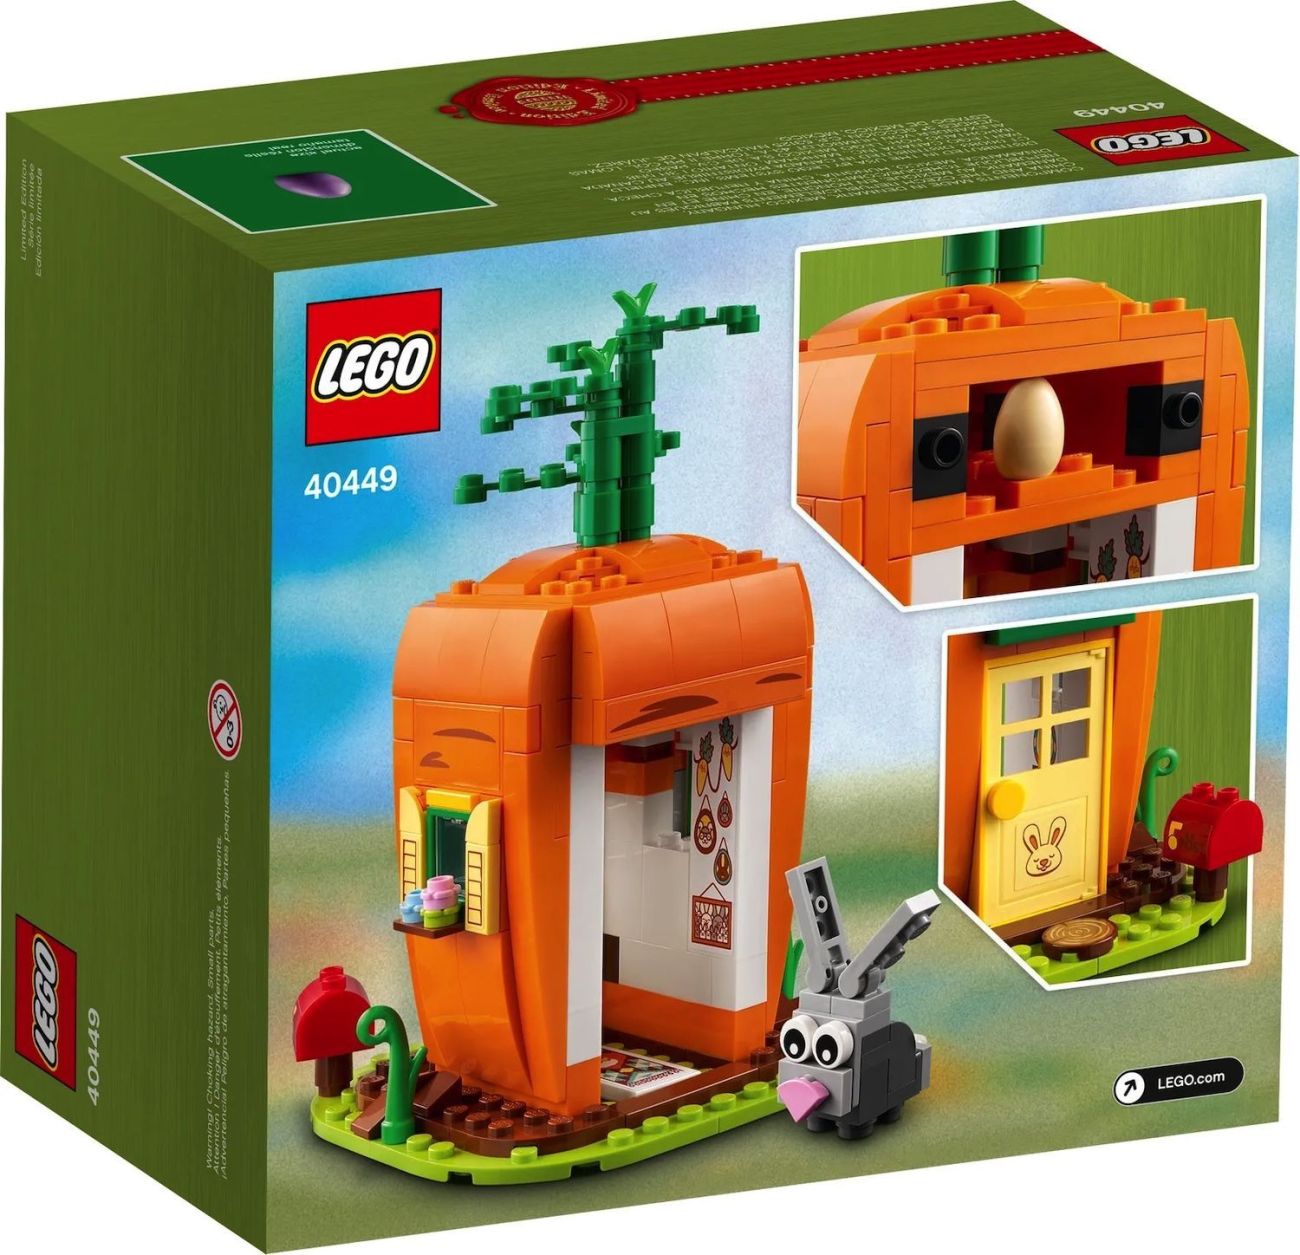 LEGO GWPs im März 2021: Bis zu drei Zugaben für einen Einkauf